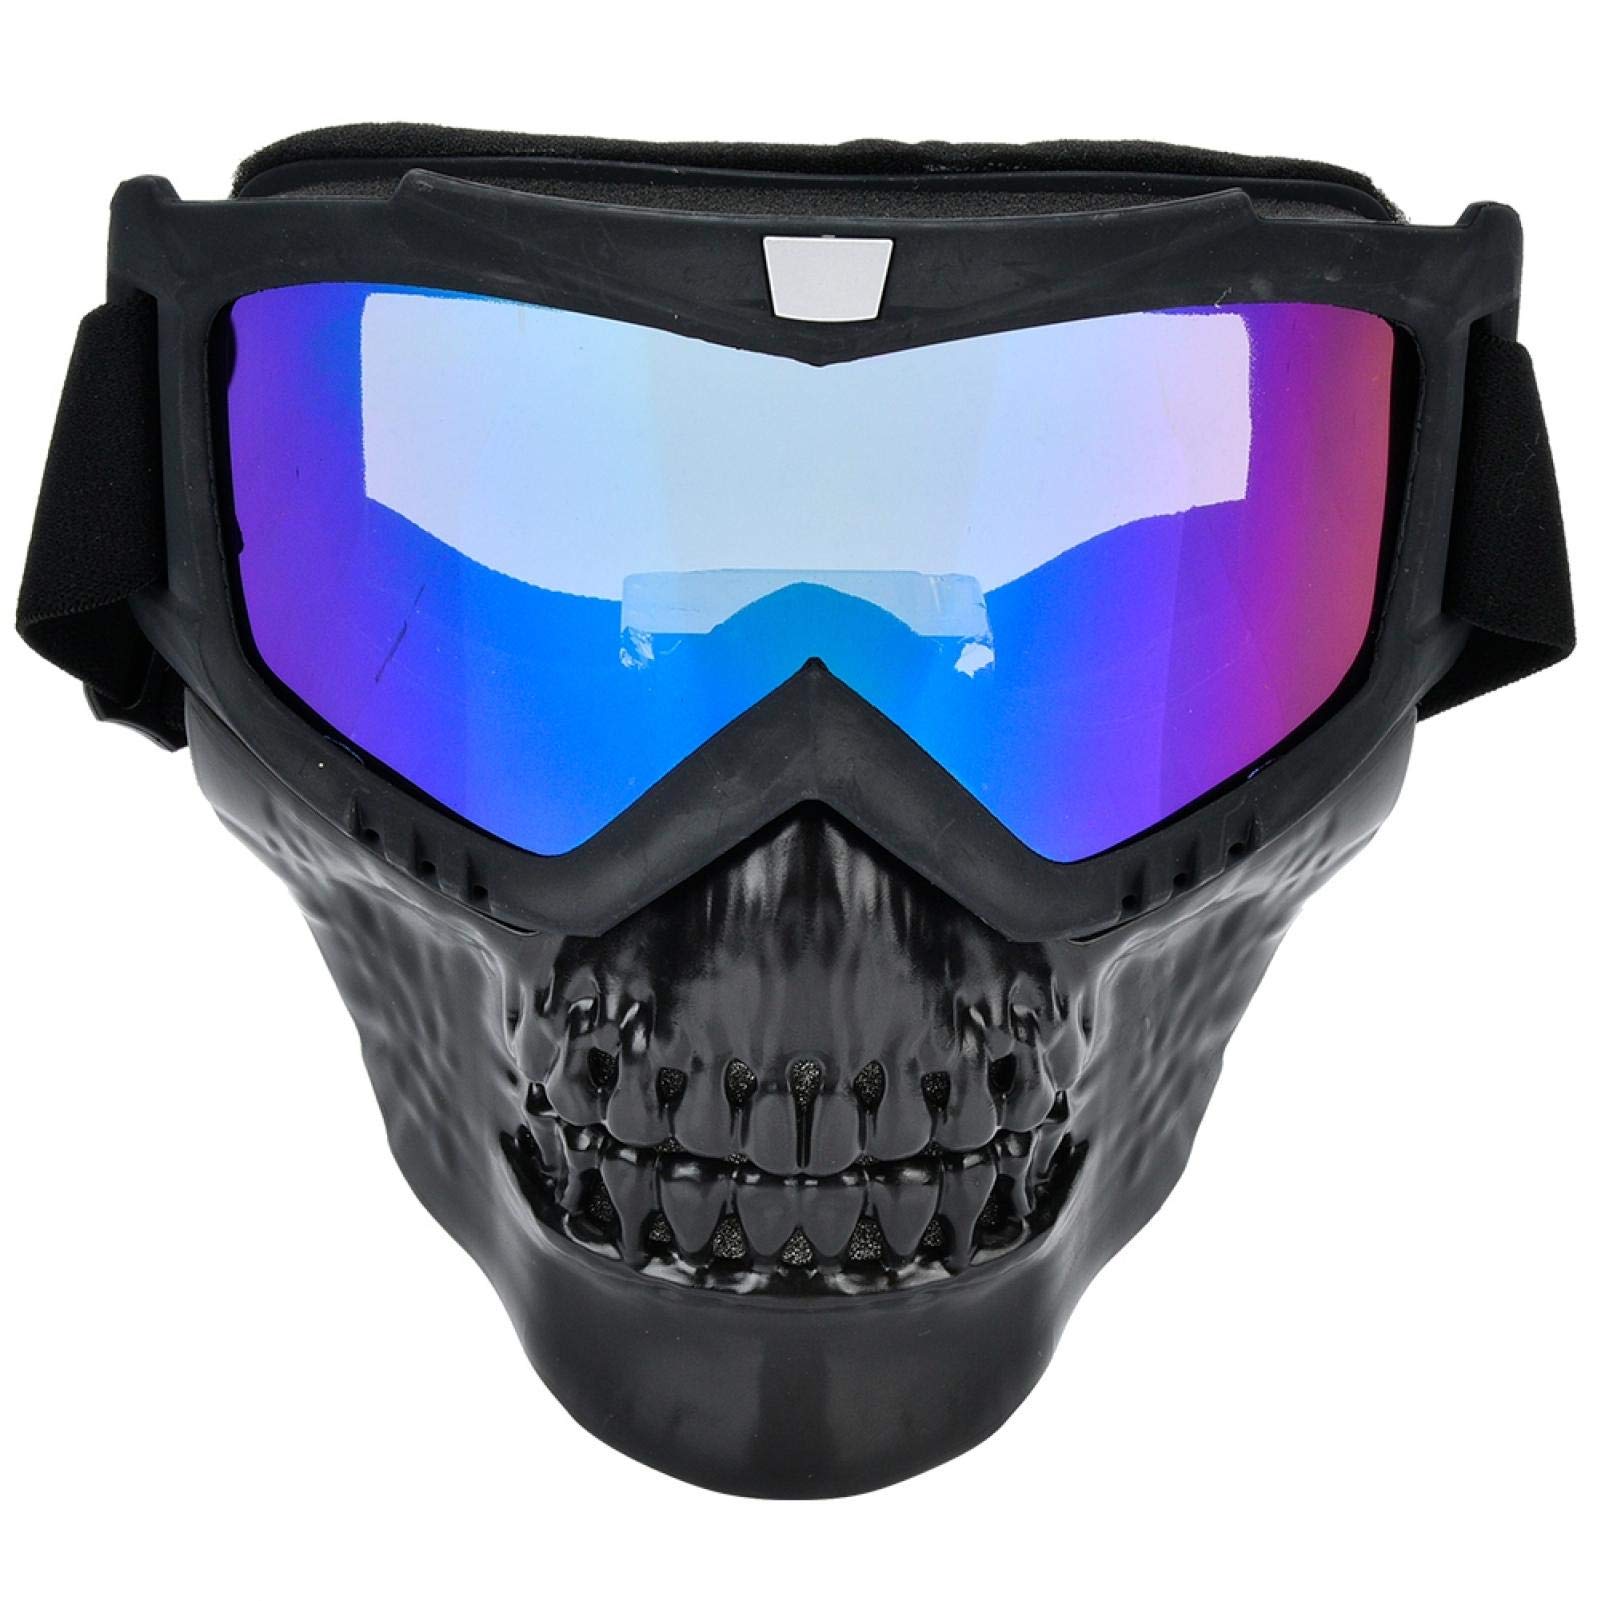 Powersports Brille, Unisex Outdoor Schädel Motorrad Helm Schutzbrille Gesichtsmaske Motorrad Rennbrille(Bunt) von EVTSCAN